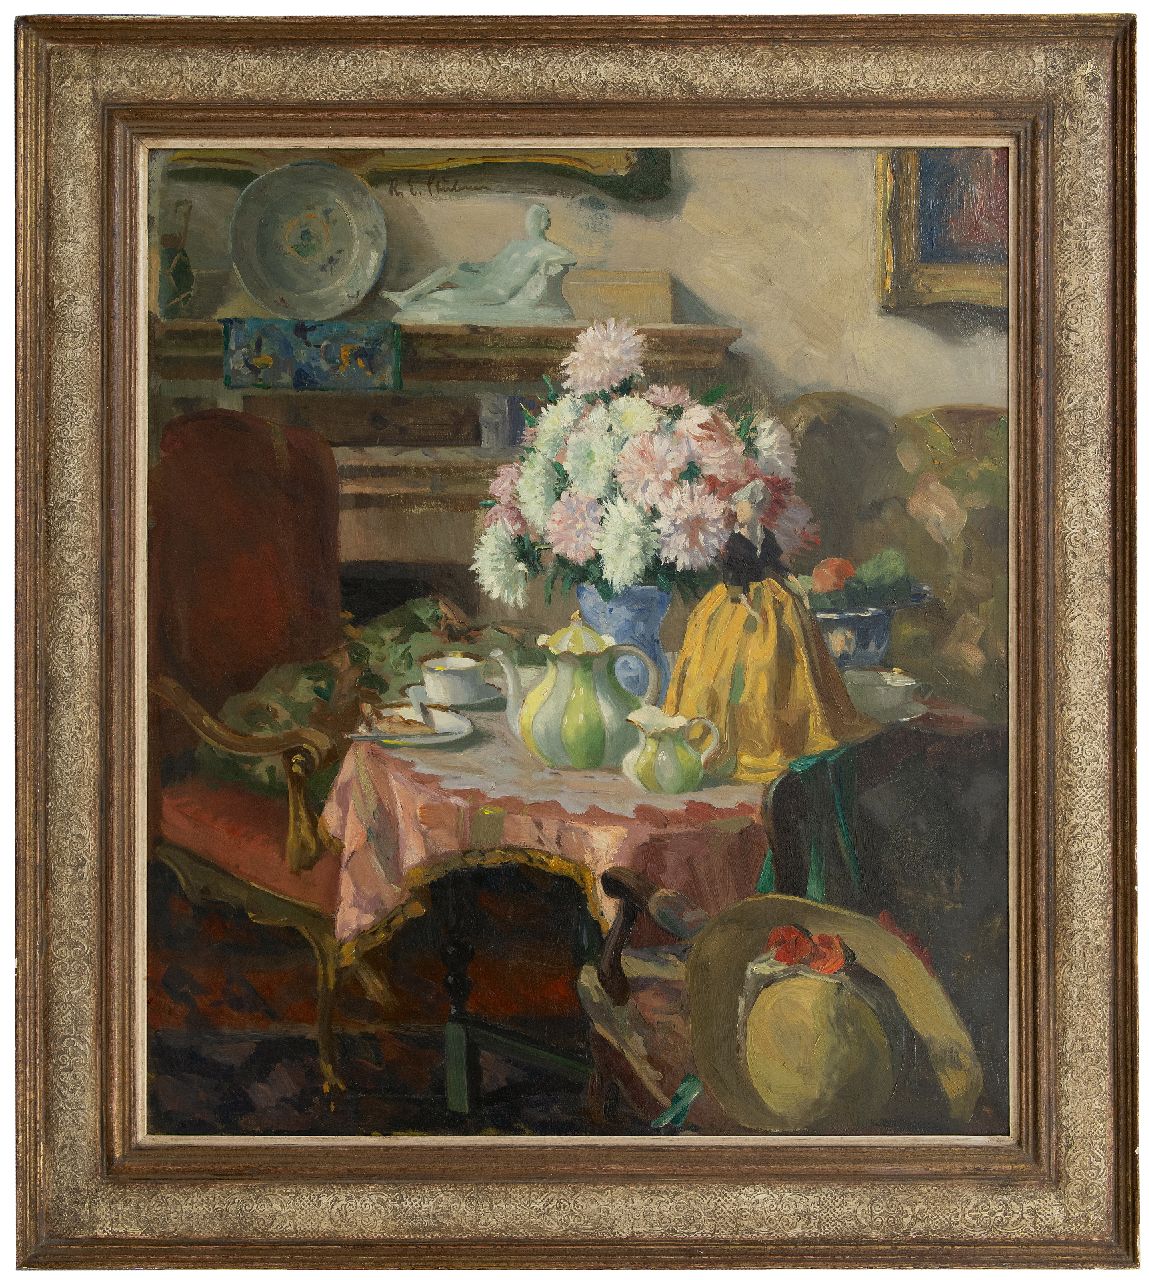 Stübner R.E.  | Robert Emil Stübner | Schilderijen te koop aangeboden | Afternoon tea, olieverf op doek 95,0 x 85,0 cm, gesigneerd linksbovenv.h.m.